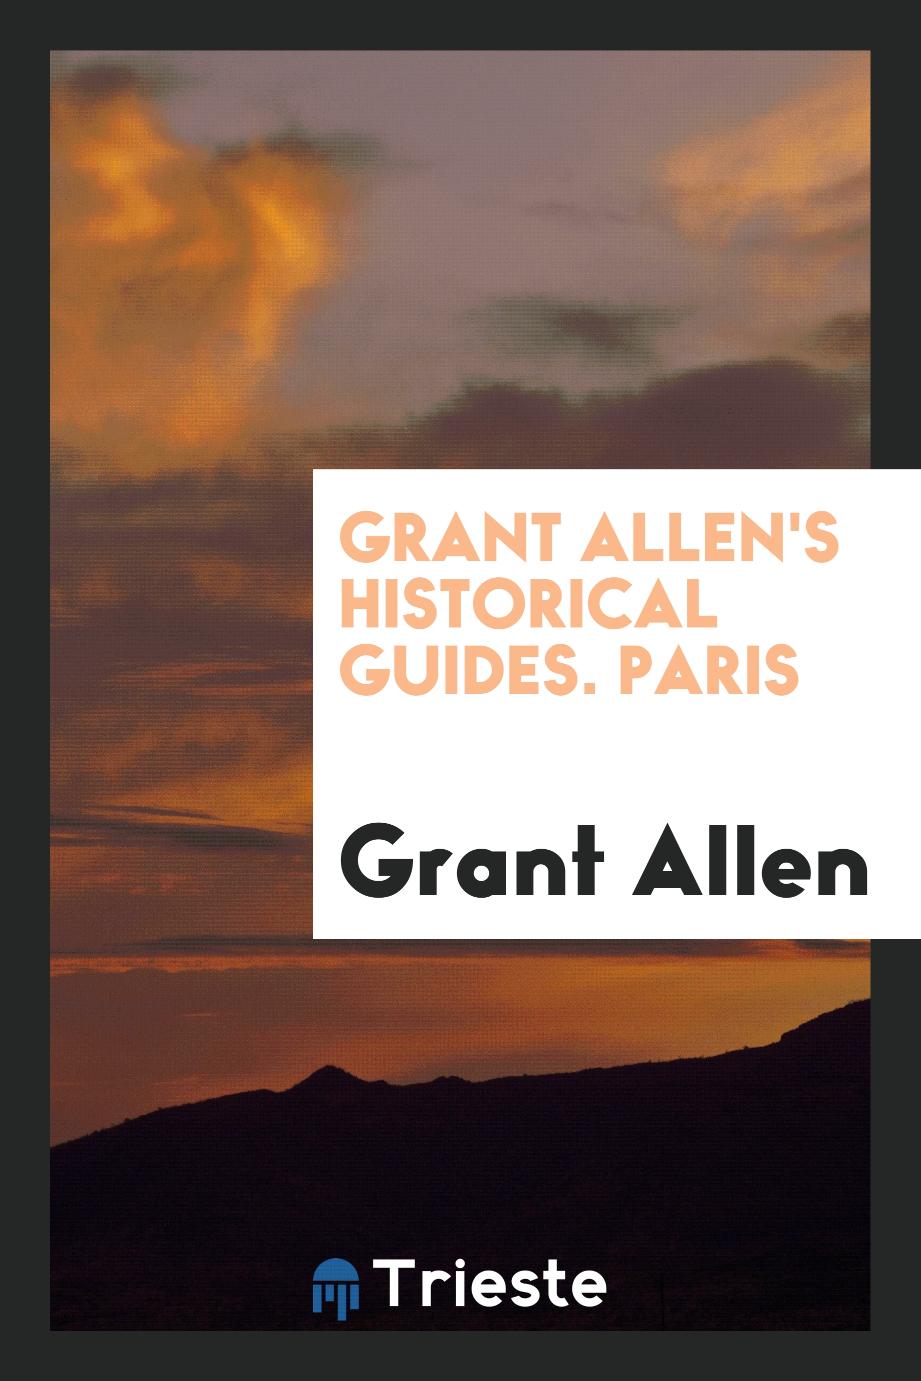 Grant Allen's historical guides. Paris